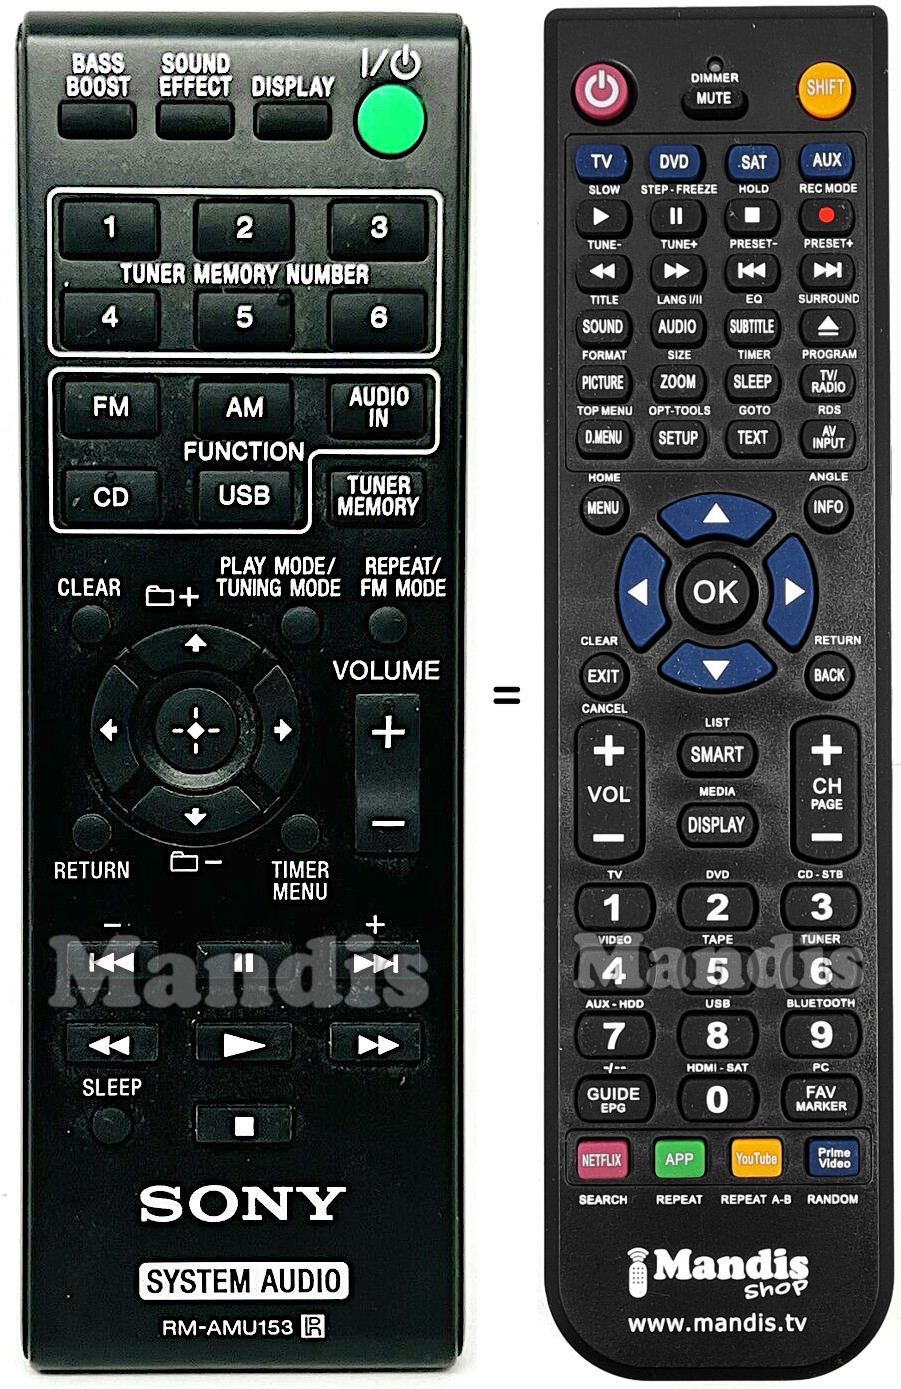 Telecomando equivalente Sony RM-AMU153